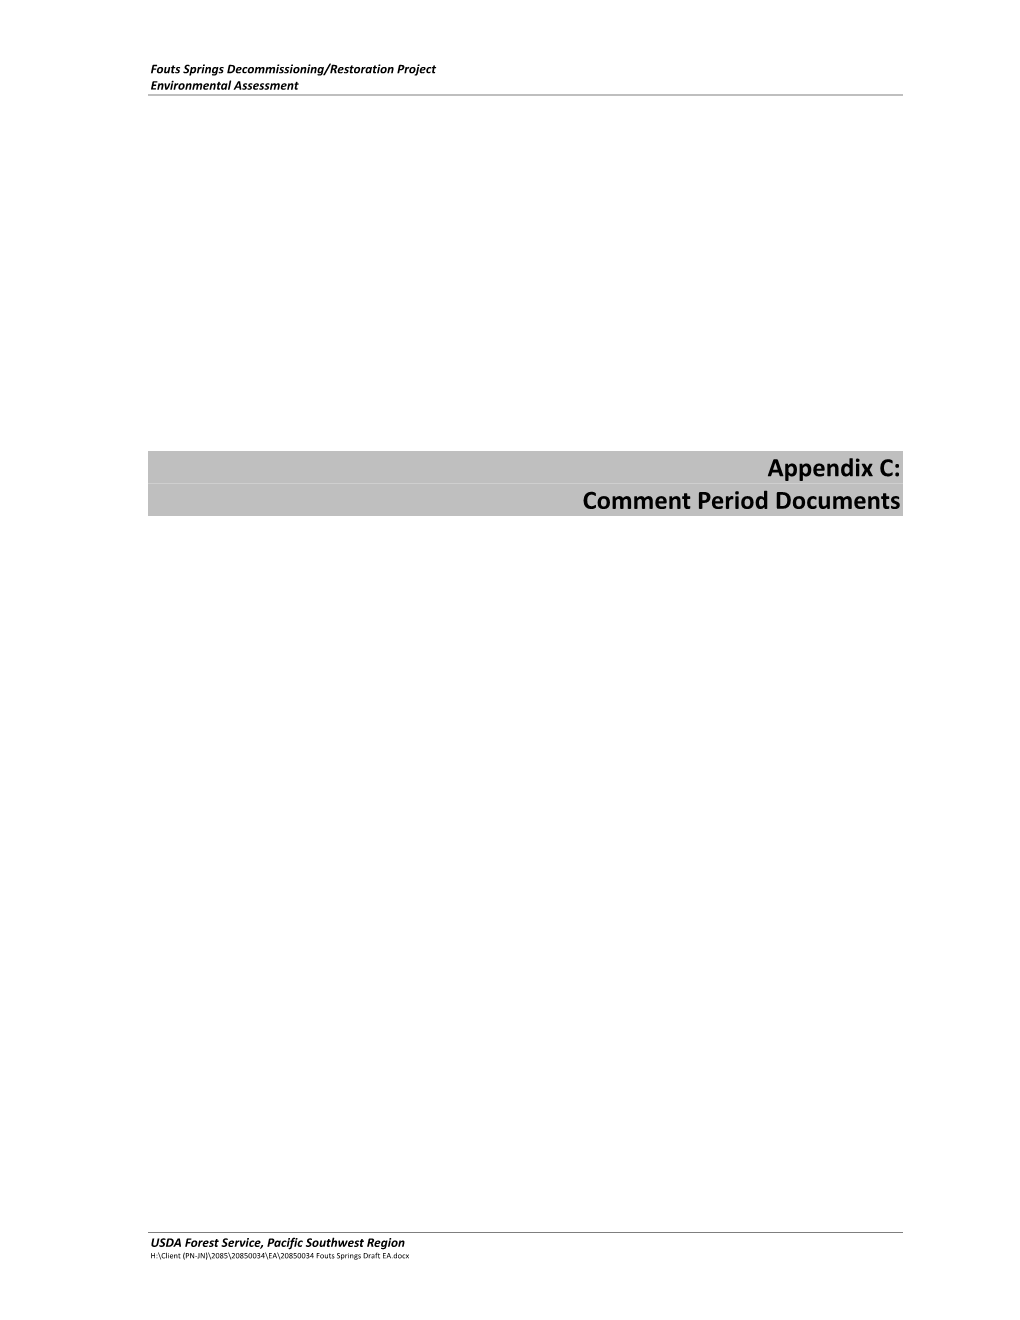 Appendix C: Comment Period Documents